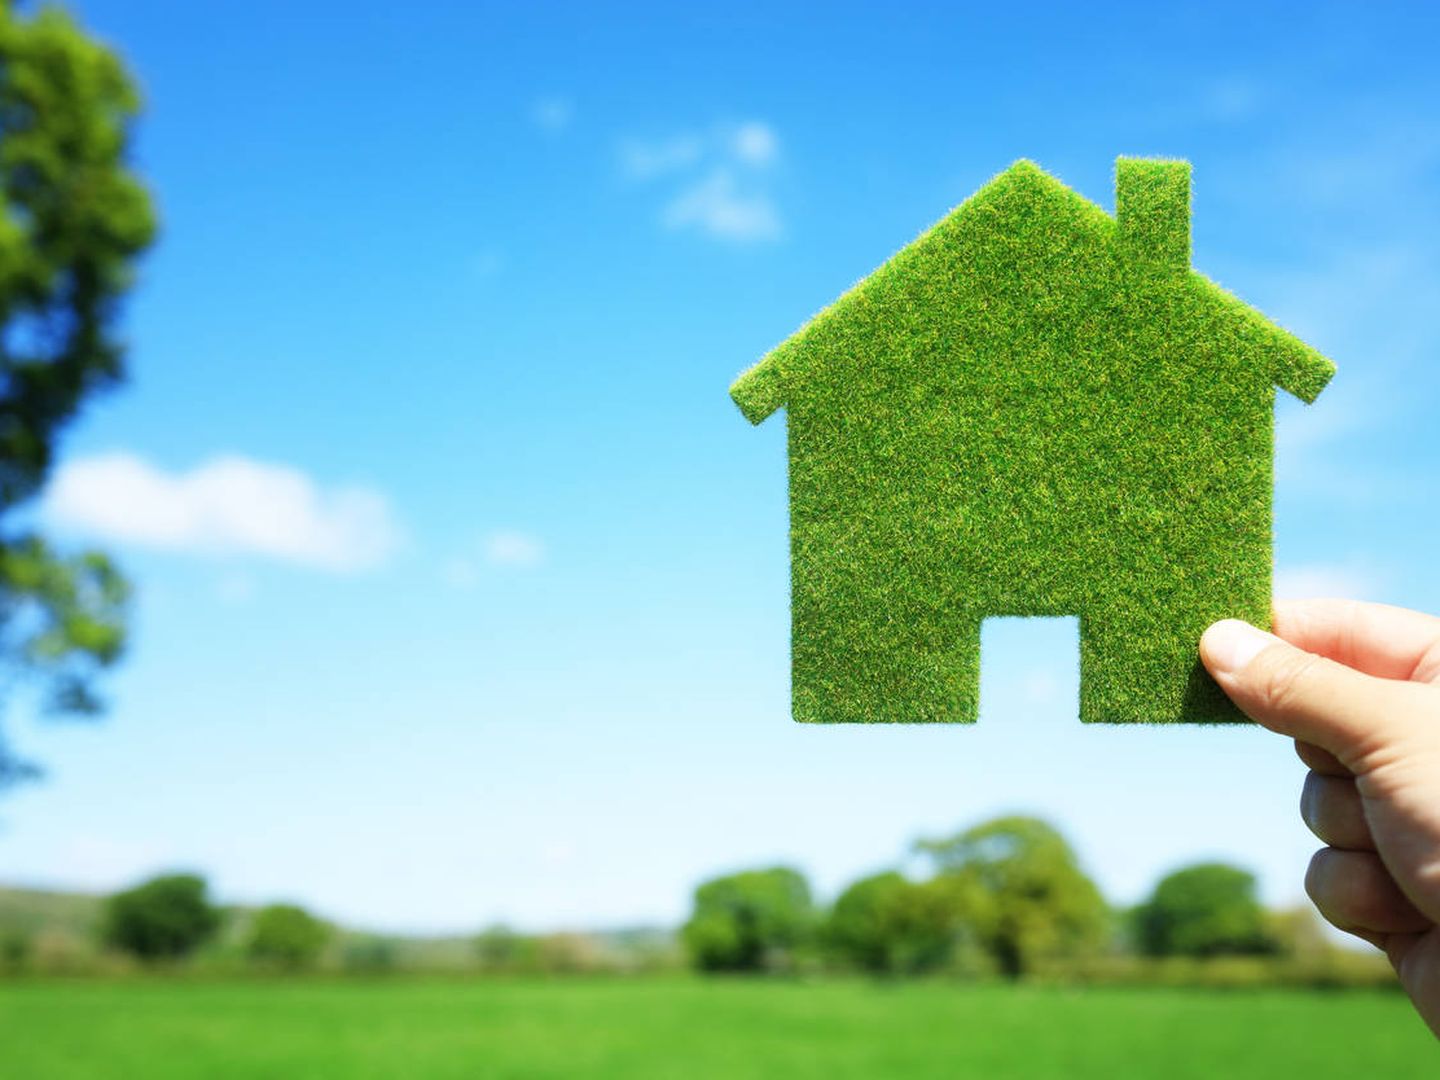 Los incentivos de las hipotecas verdes promueven su popularización. (iStock)